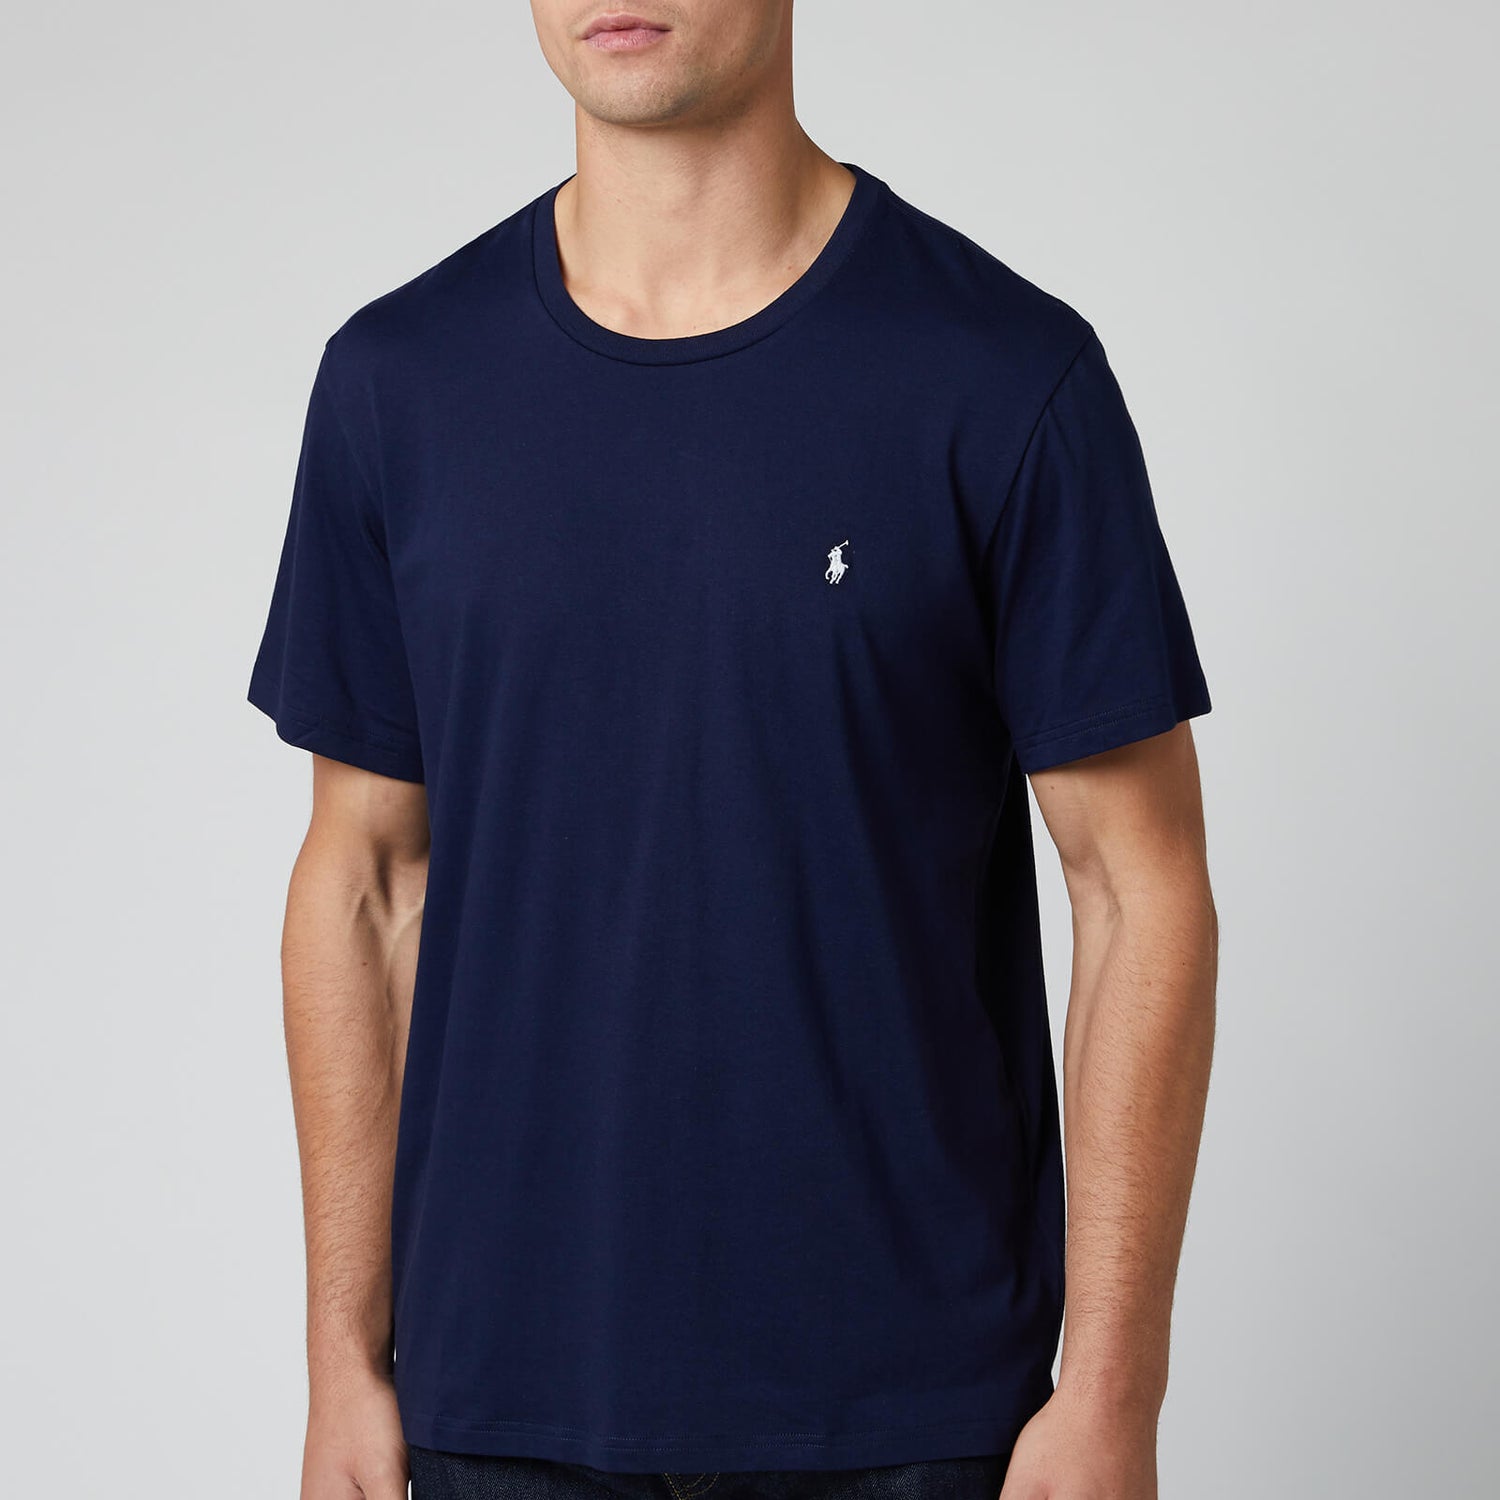 Polo Ralph Lauren Men's Liquid Cotton Jersey T-Shirt - Cruise Navy - M